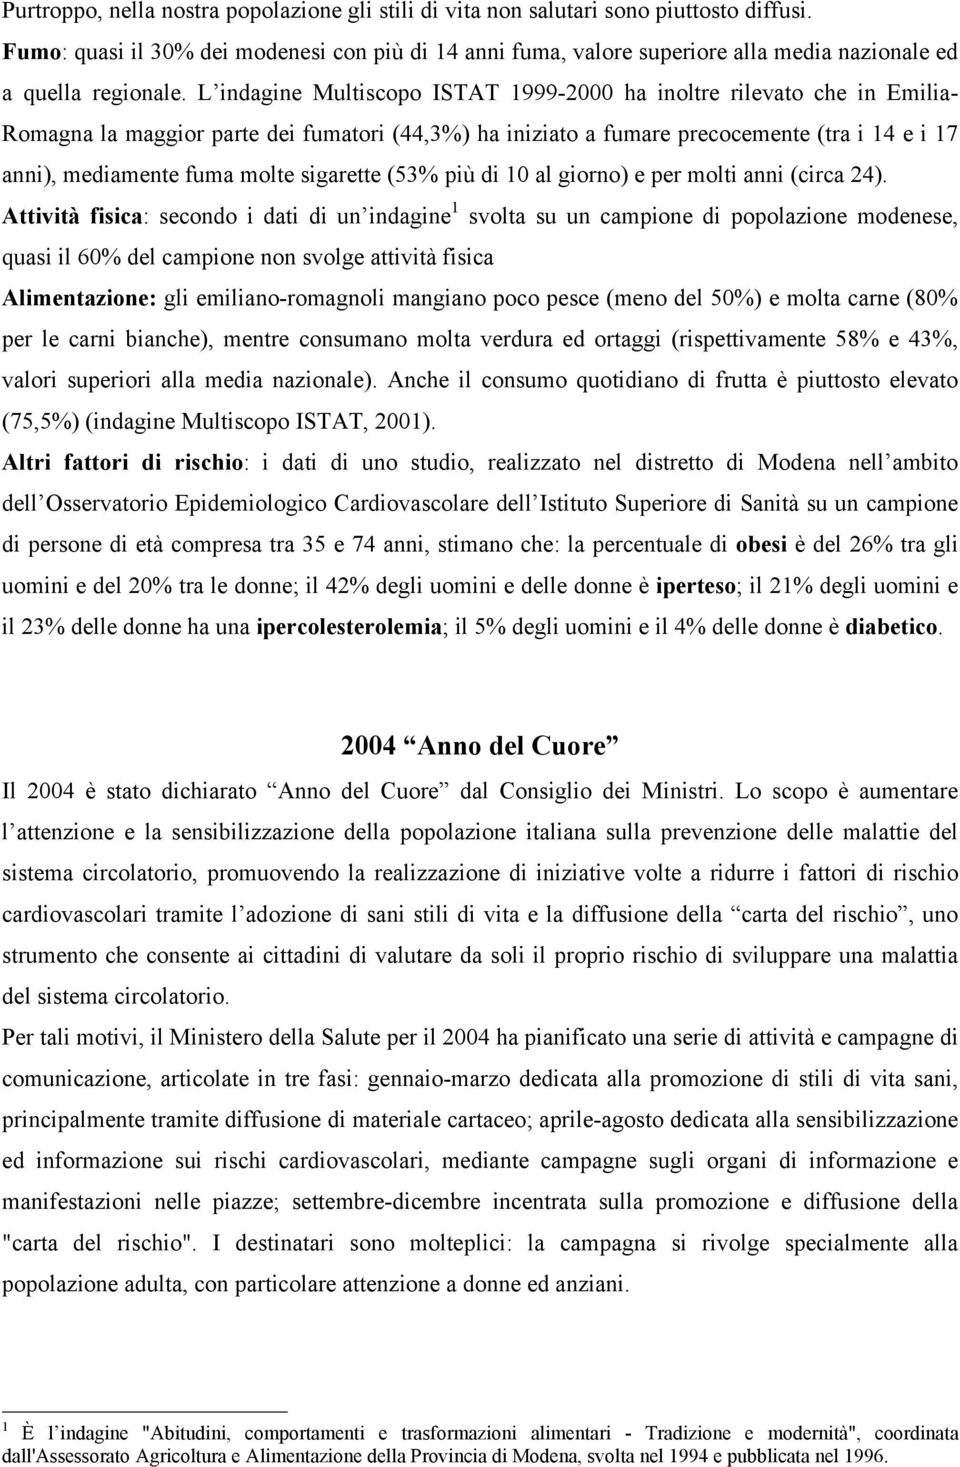 L indagine Multiscopo ISTAT 1999-2000 ha inoltre rilevato che in Emilia- Romagna la maggior parte dei fumatori (44,3%) ha iniziato a fumare precocemente (tra i 14 e i 17 anni), mediamente fuma molte